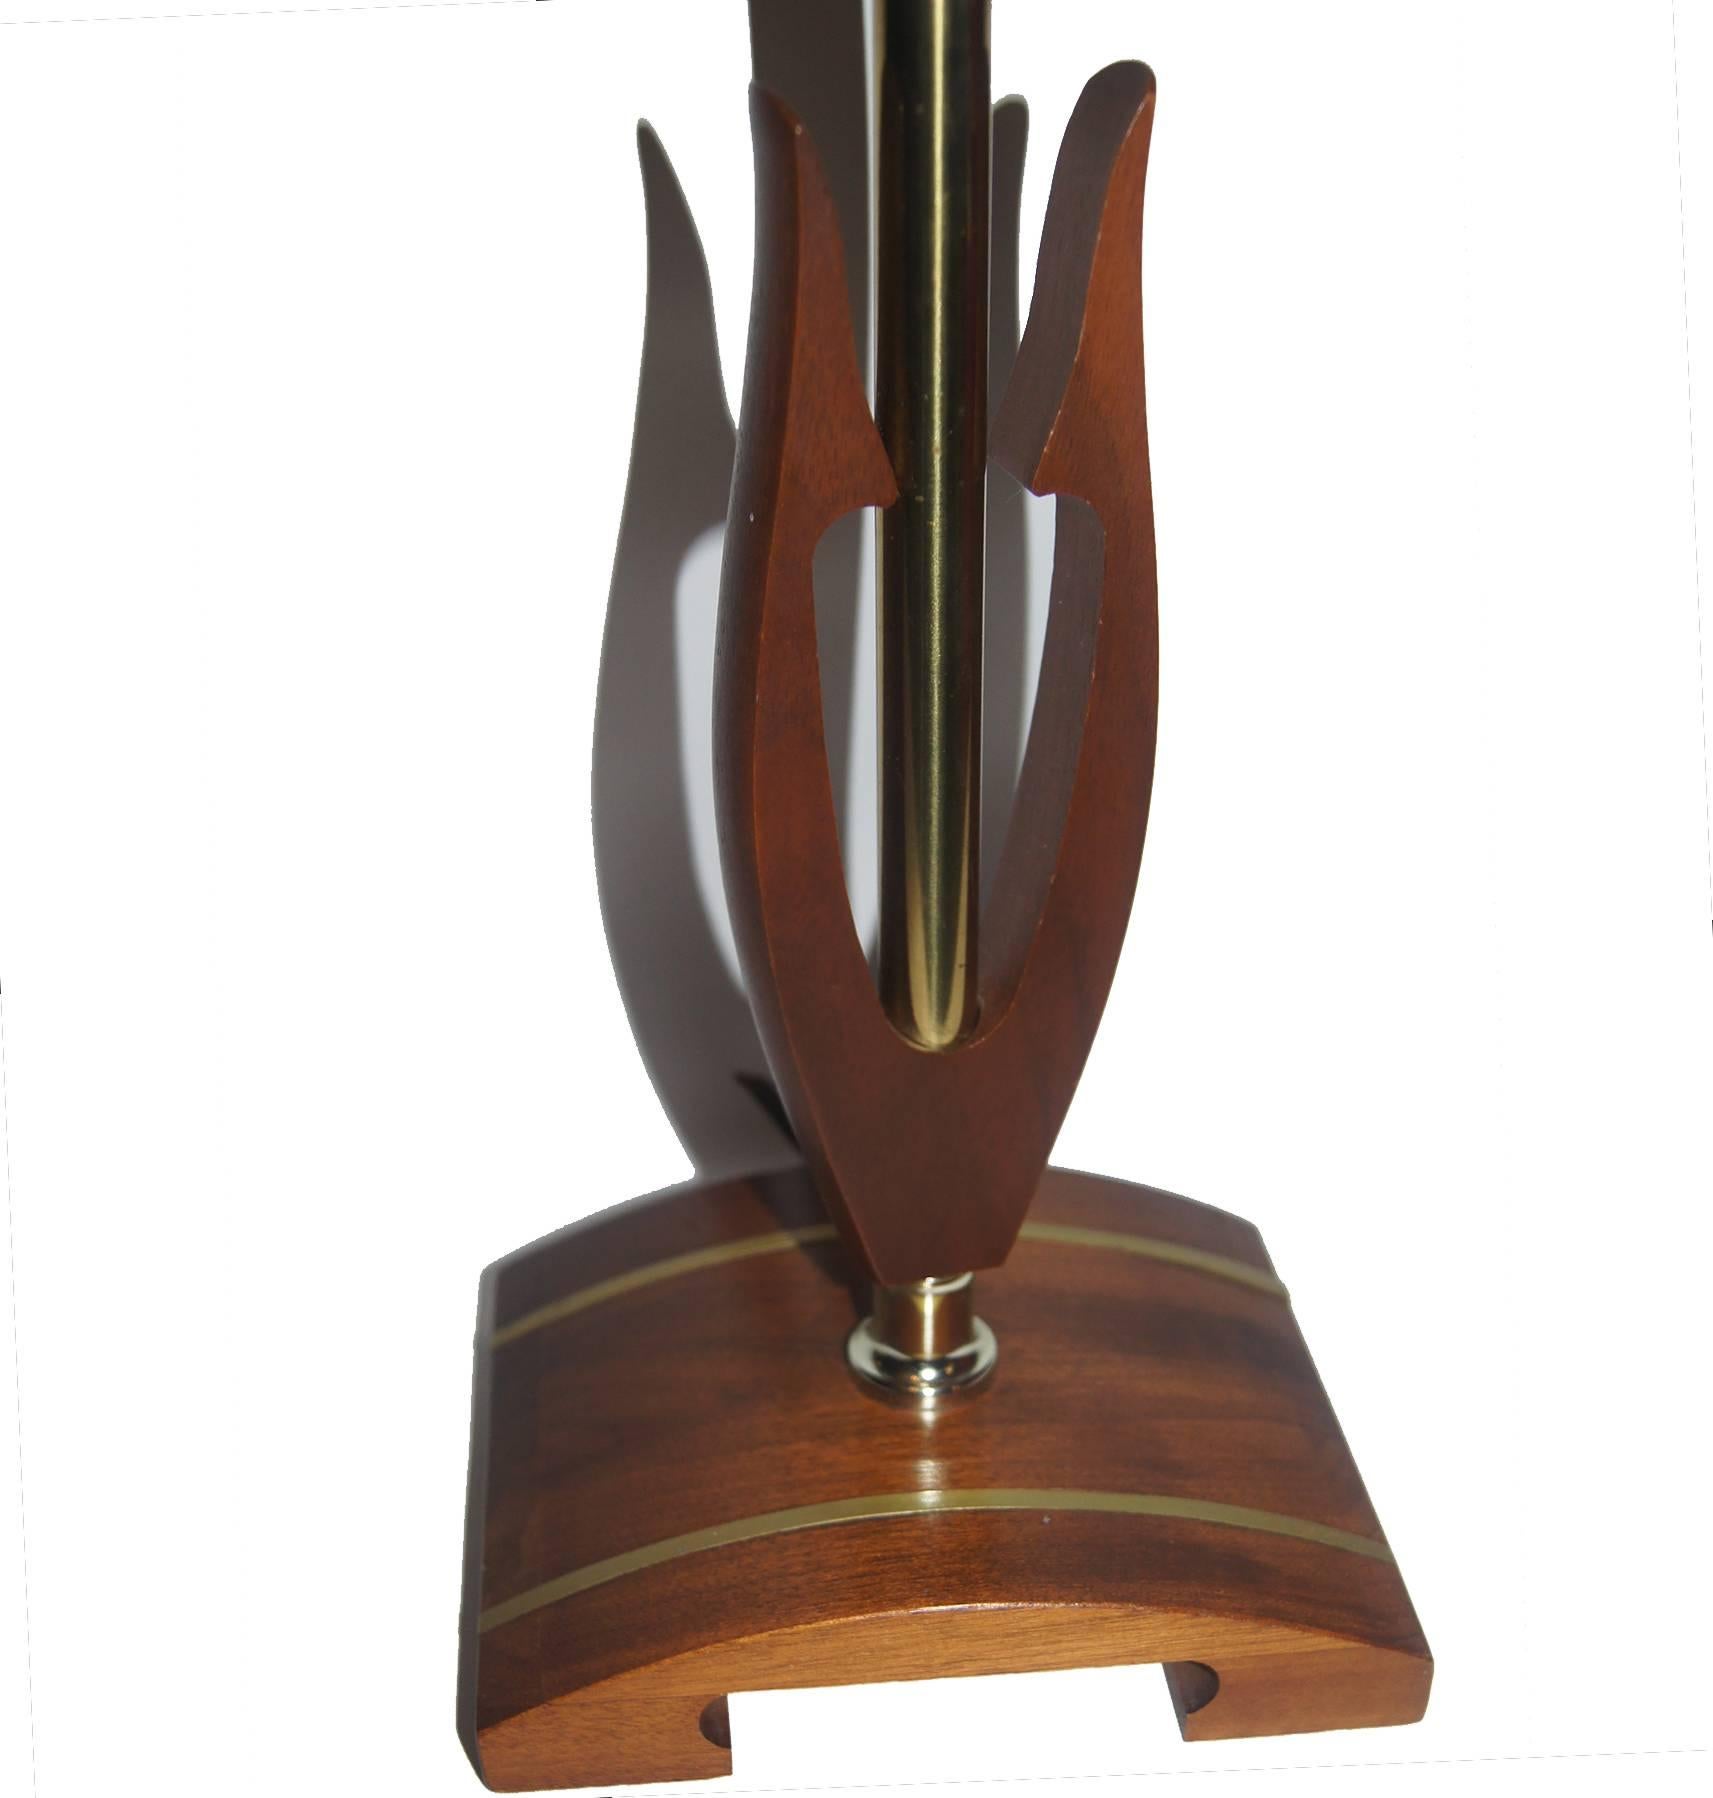 Lampe de bureau de style danois moderne du milieu du siècle, en noyer, avec corps stylisé et base avec métal inséré.

Mesures :
Hauteur 19